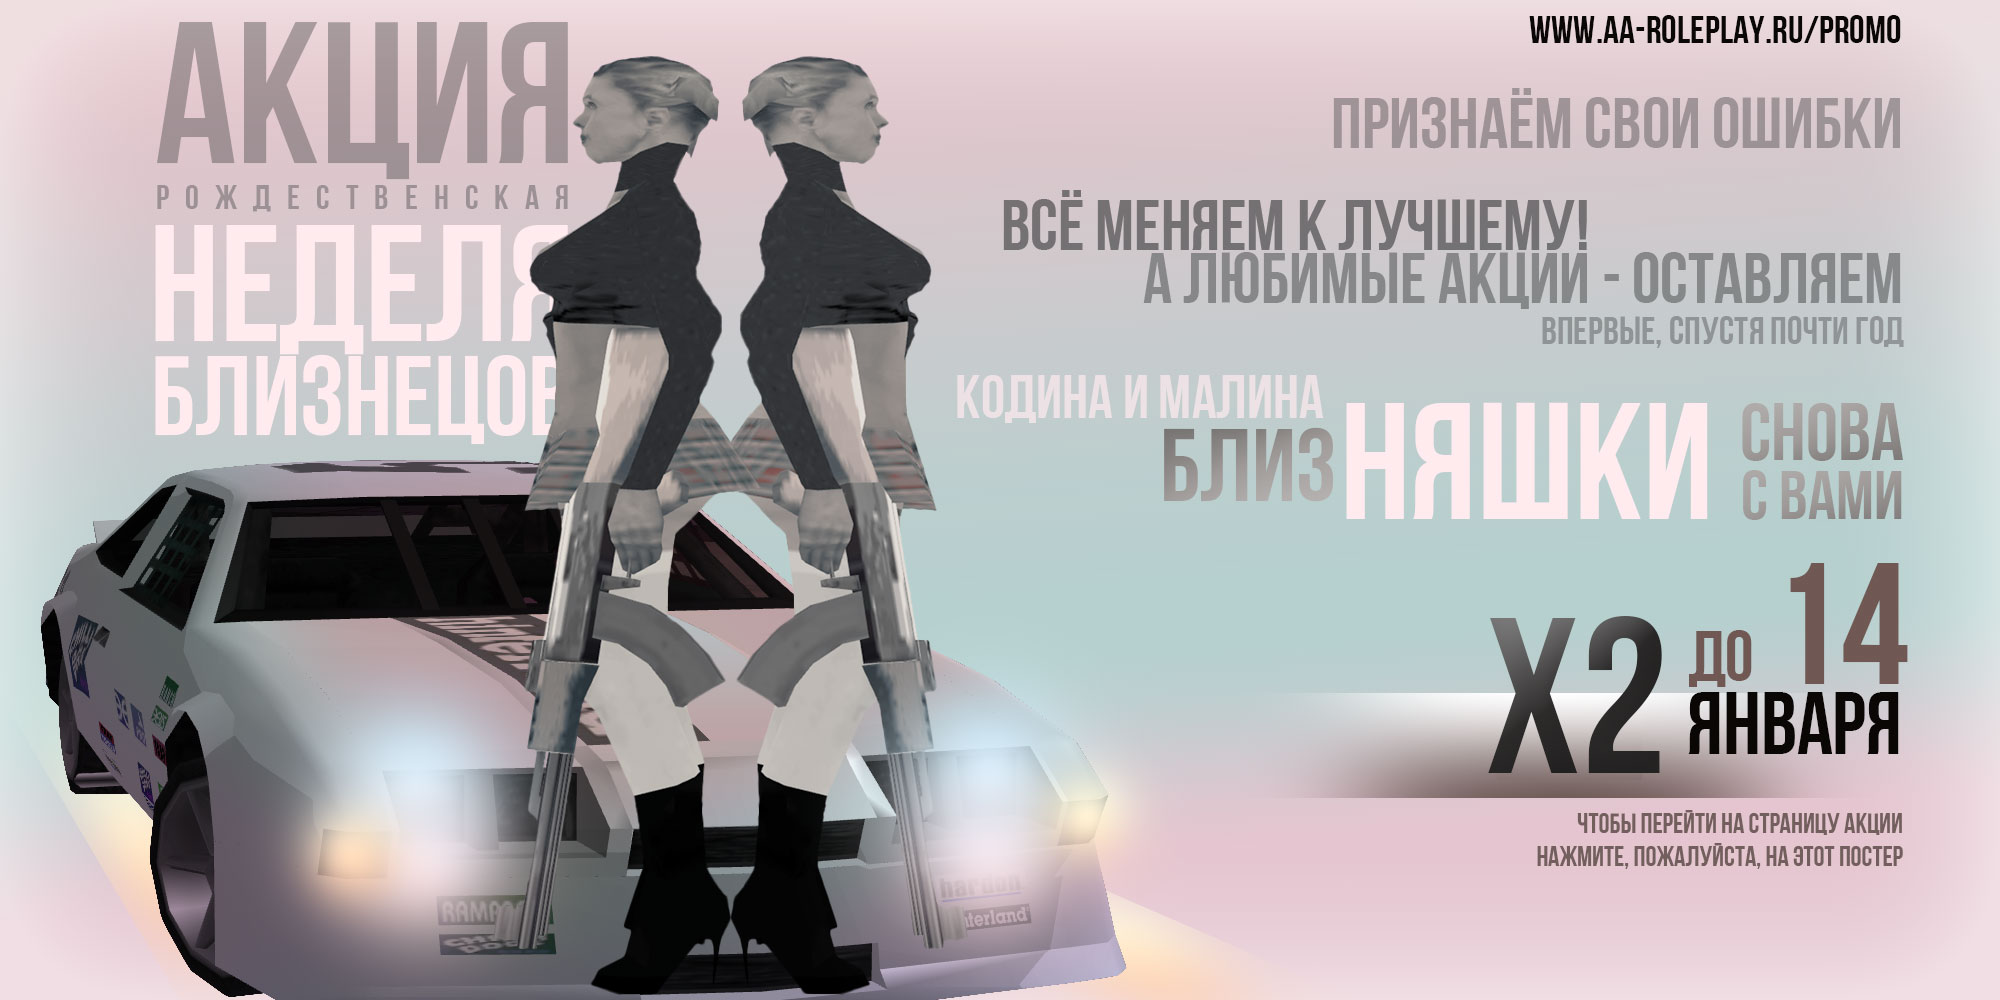 Постер акции - Неделя близнецов (197.92 КБ) Просмотров: 517